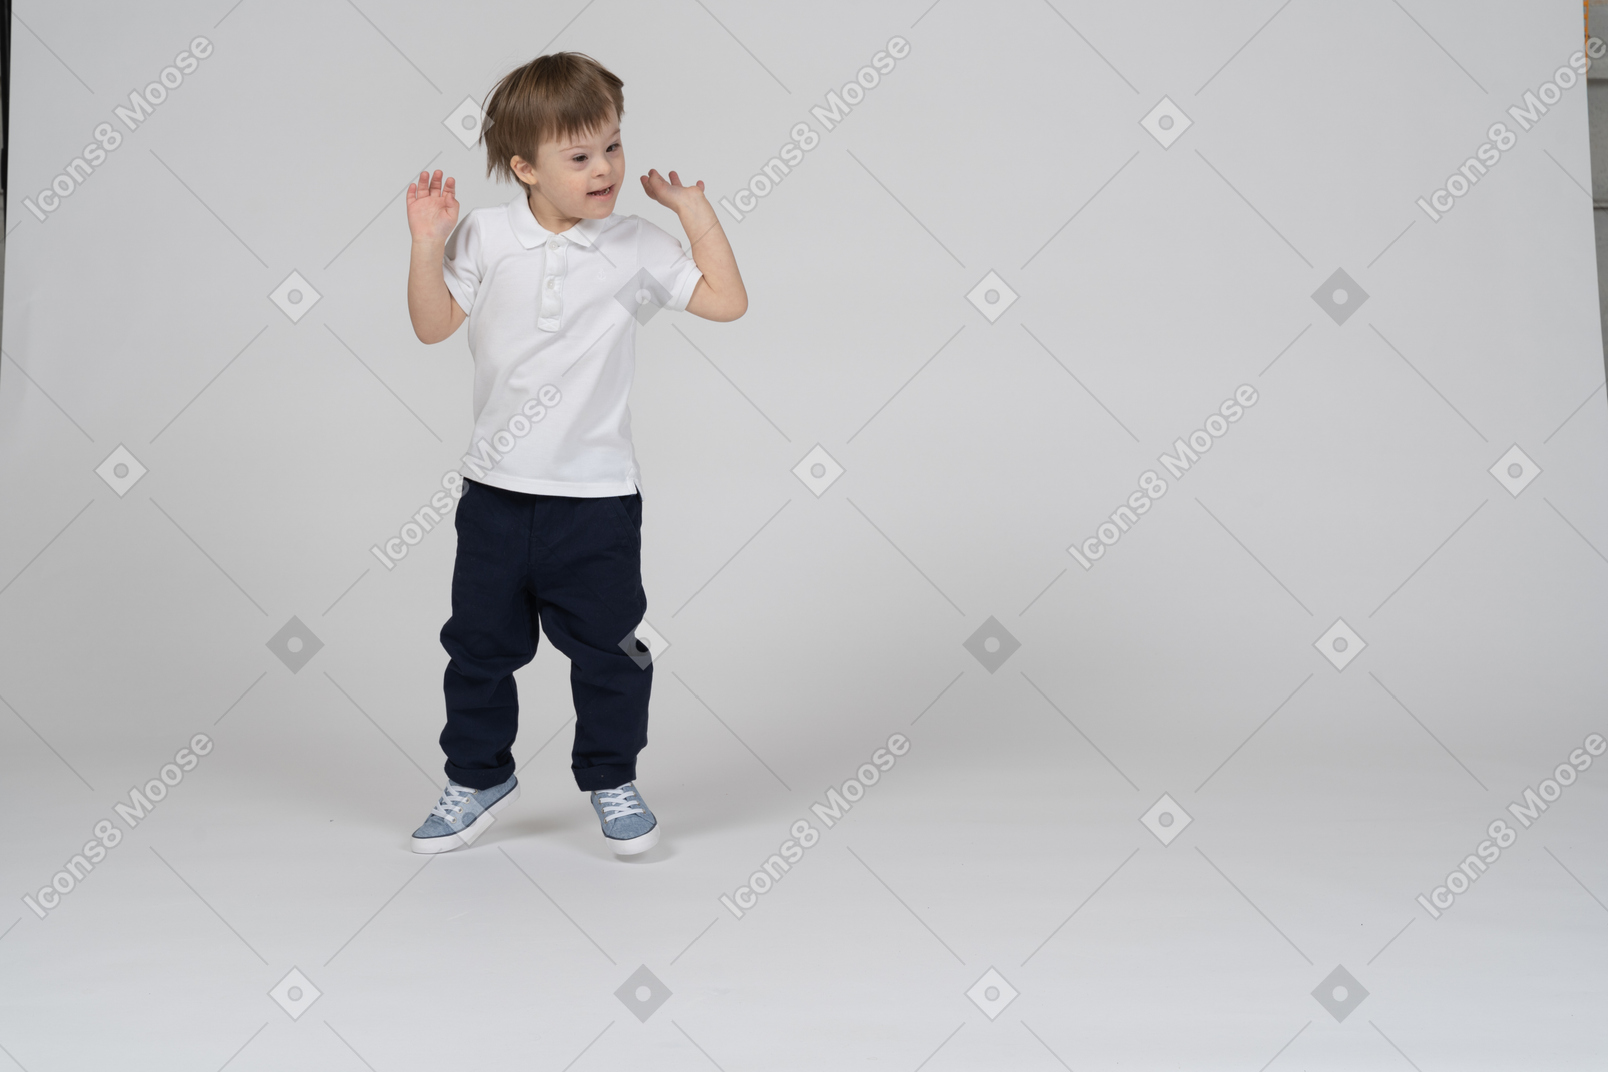 Vue de face d'un garçon sautant avec enthousiasme